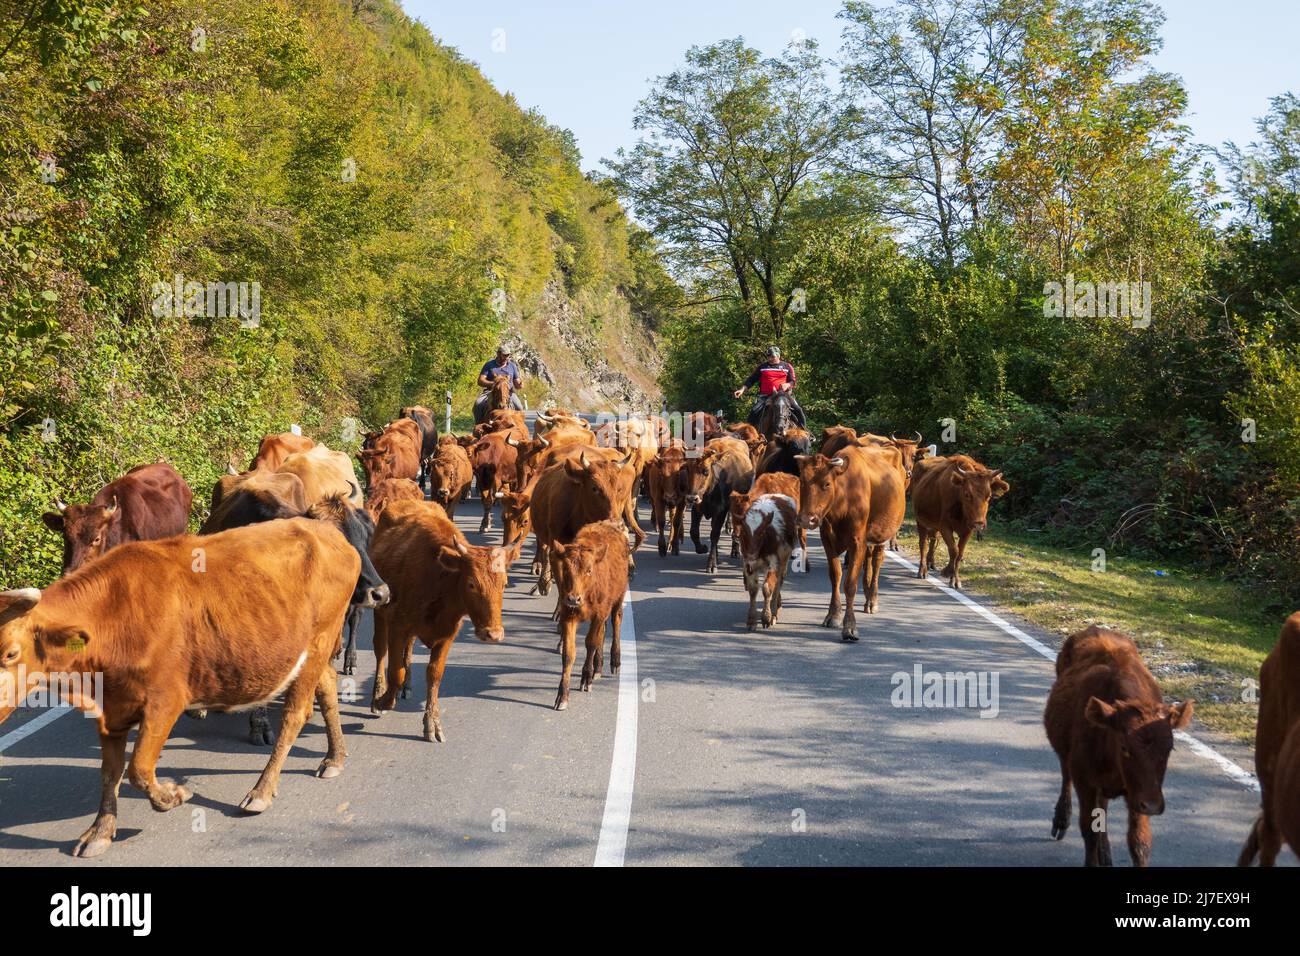 Herdsmen on horses shepherding cows Stock Photo